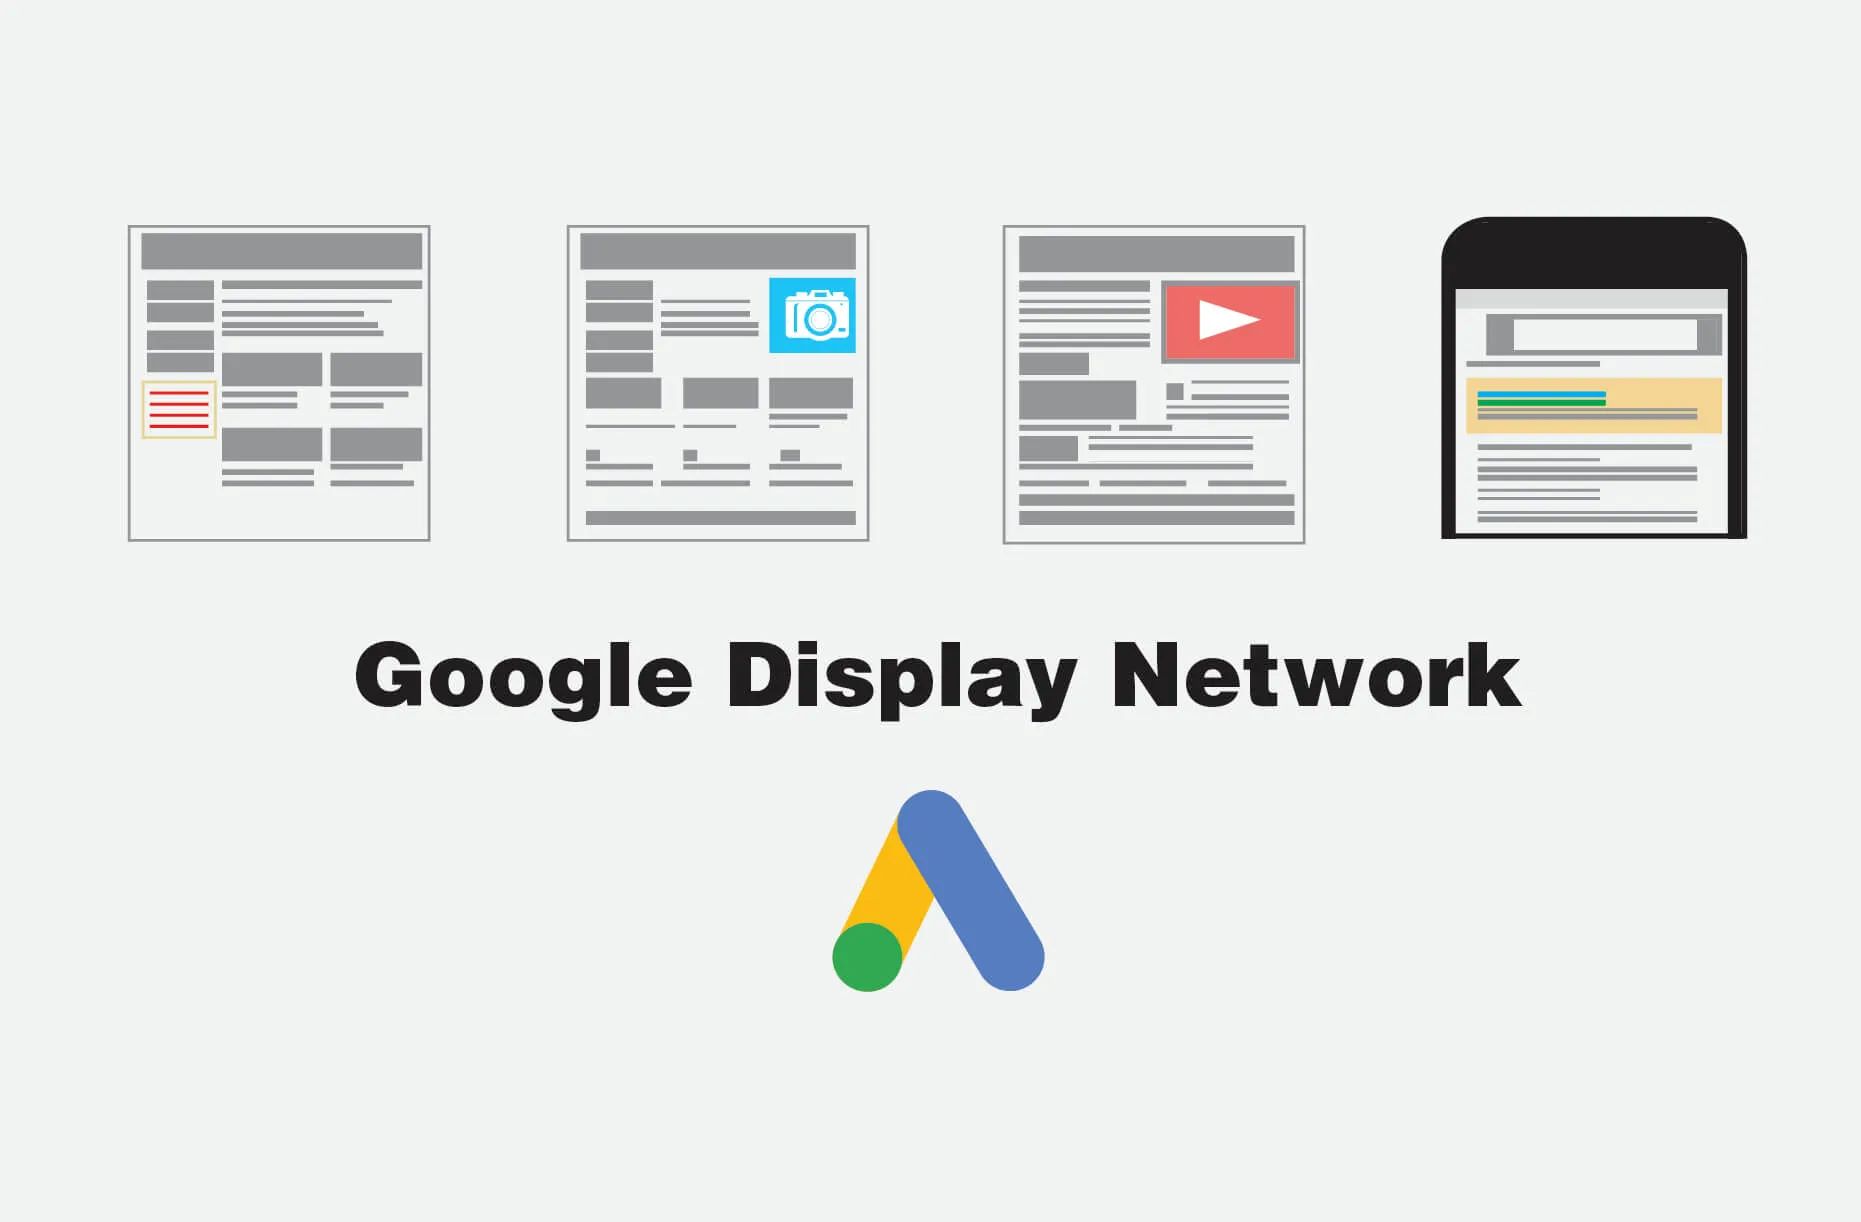 Google Display Network giúp tiếp cận khách hàng tiềm năng khi họ đang sử dụng trình duyệt trên bất kỳ một trang web nào